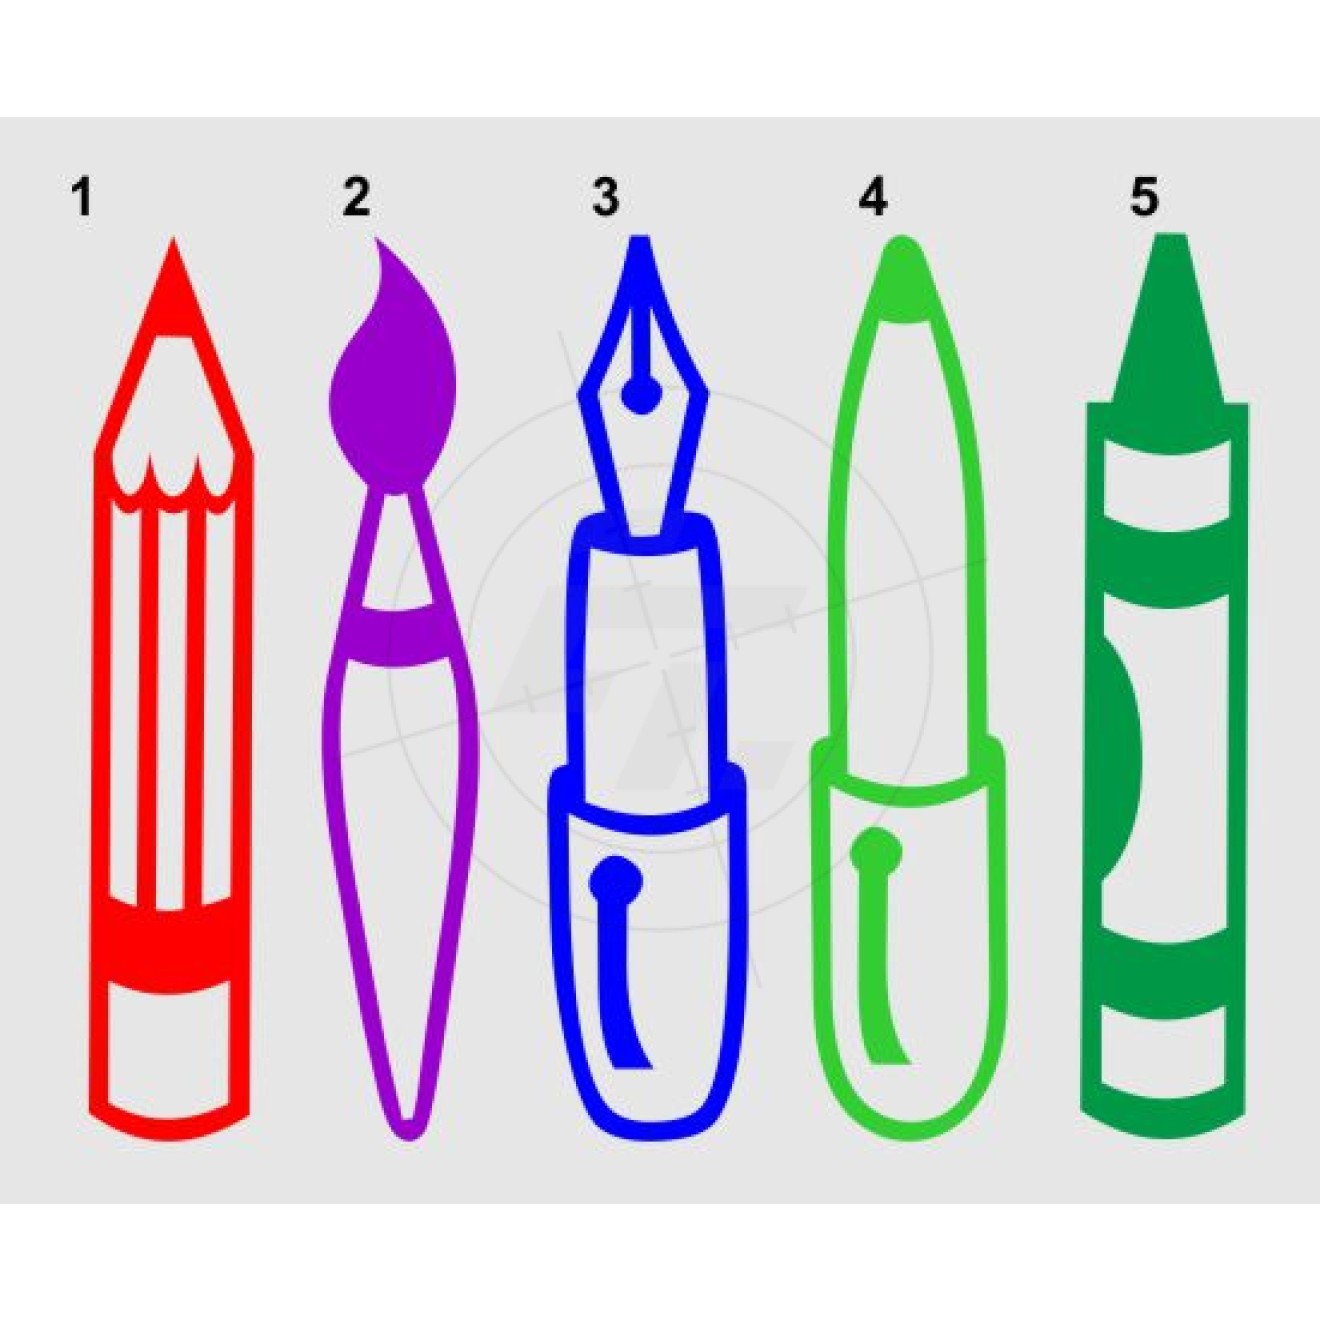 Bleistift, Pinsel, Füller, Kugelschreiber, Edding